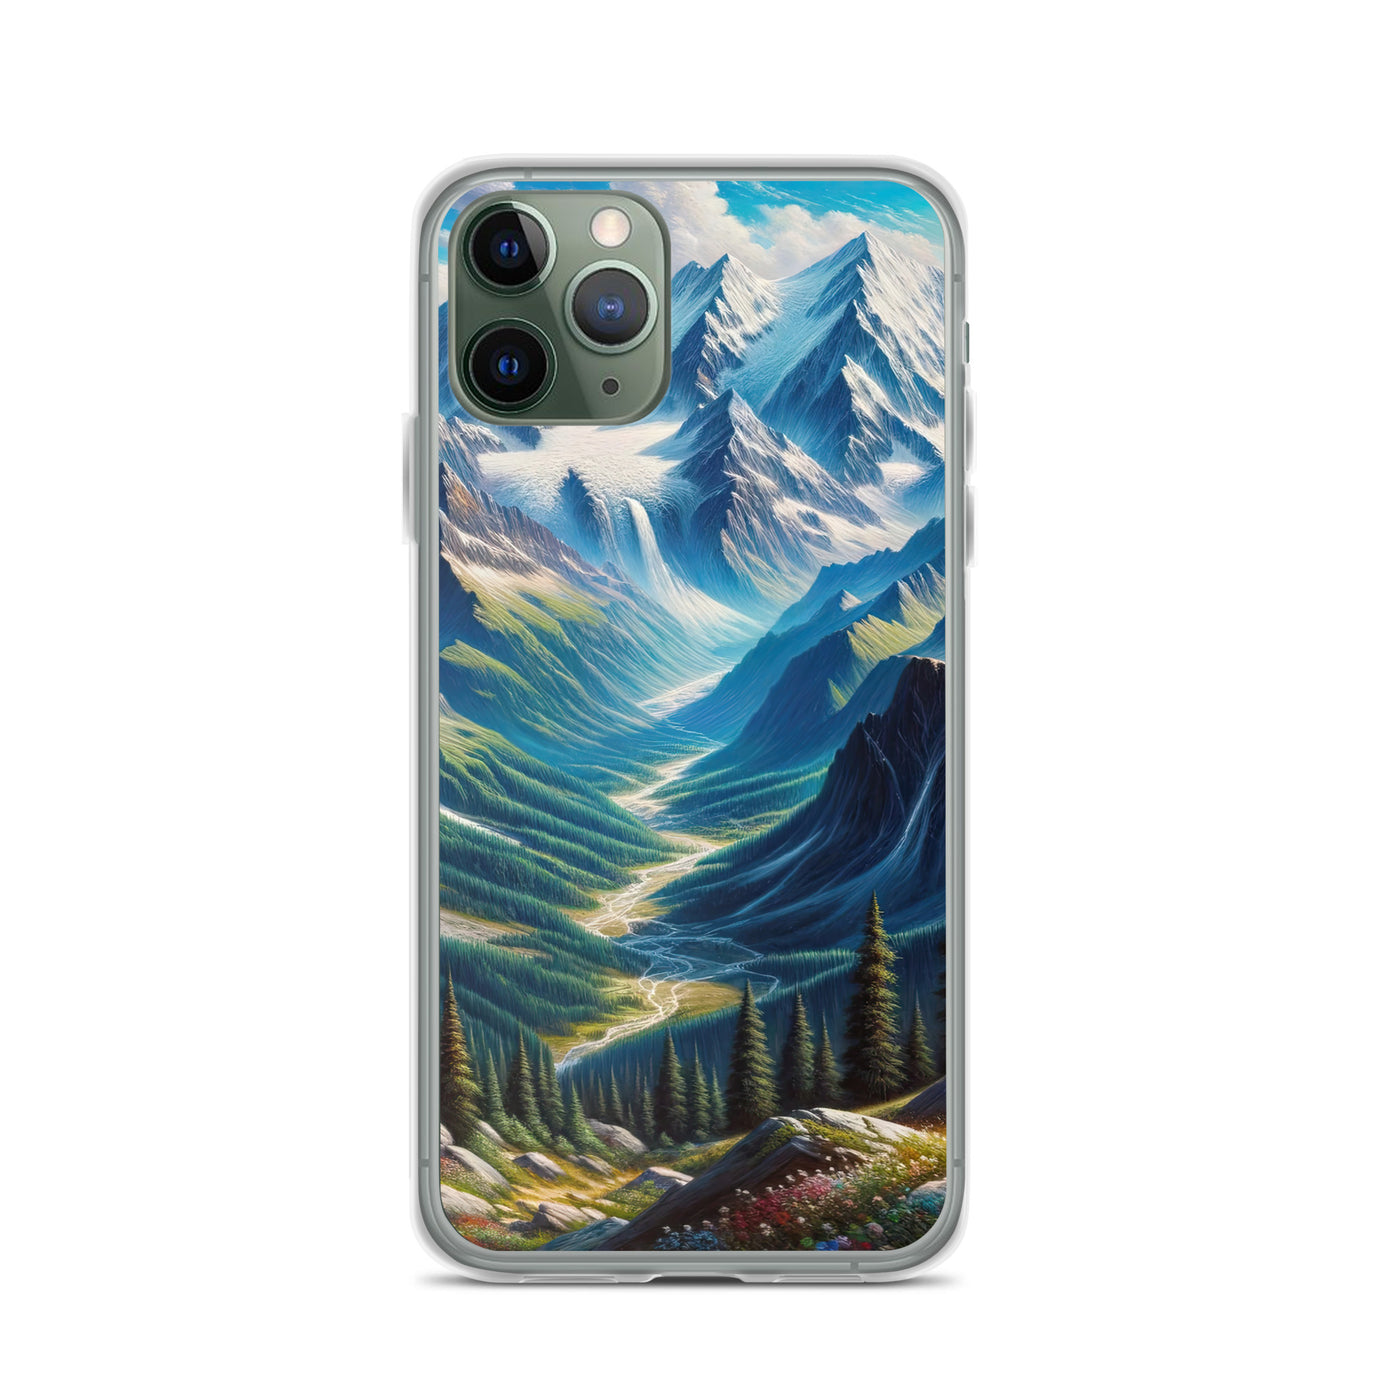 Panorama-Ölgemälde der Alpen mit schneebedeckten Gipfeln und schlängelnden Flusstälern - iPhone Schutzhülle (durchsichtig) berge xxx yyy zzz iPhone 11 Pro